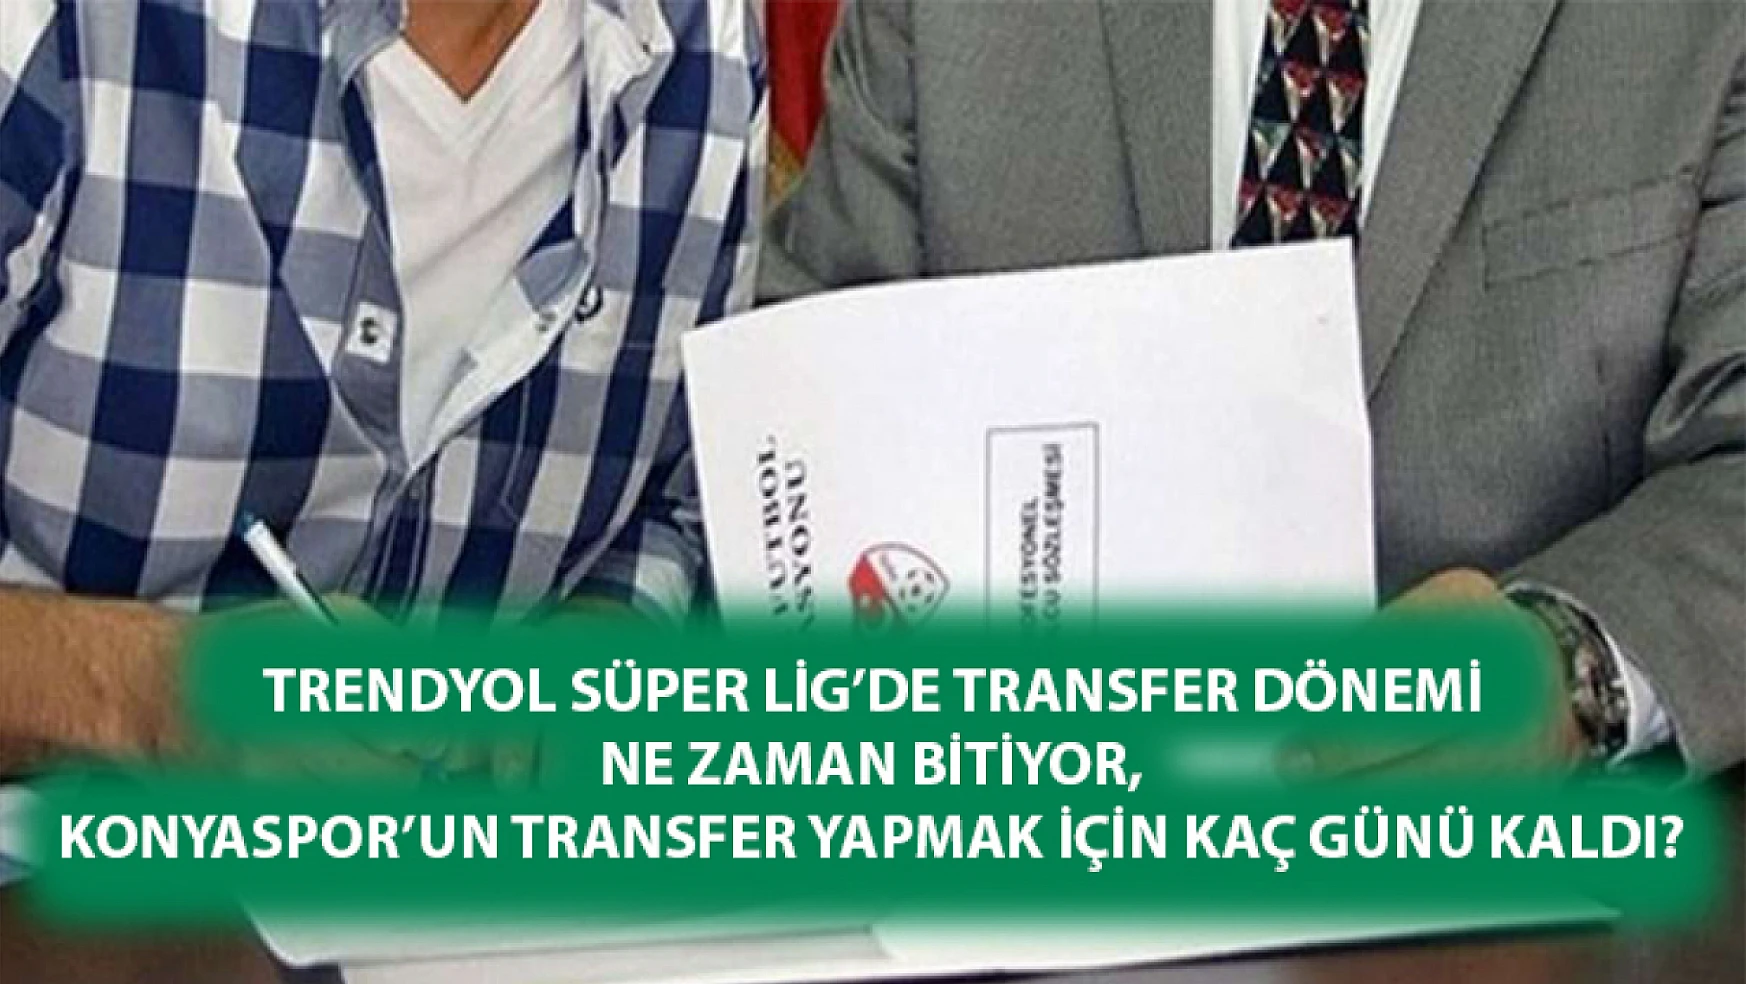 Trendyol Süper Lig'de transfer dönemi ne zaman bitiyor, Konyaspor'un transfer yapmak için kaç günü kaldı?